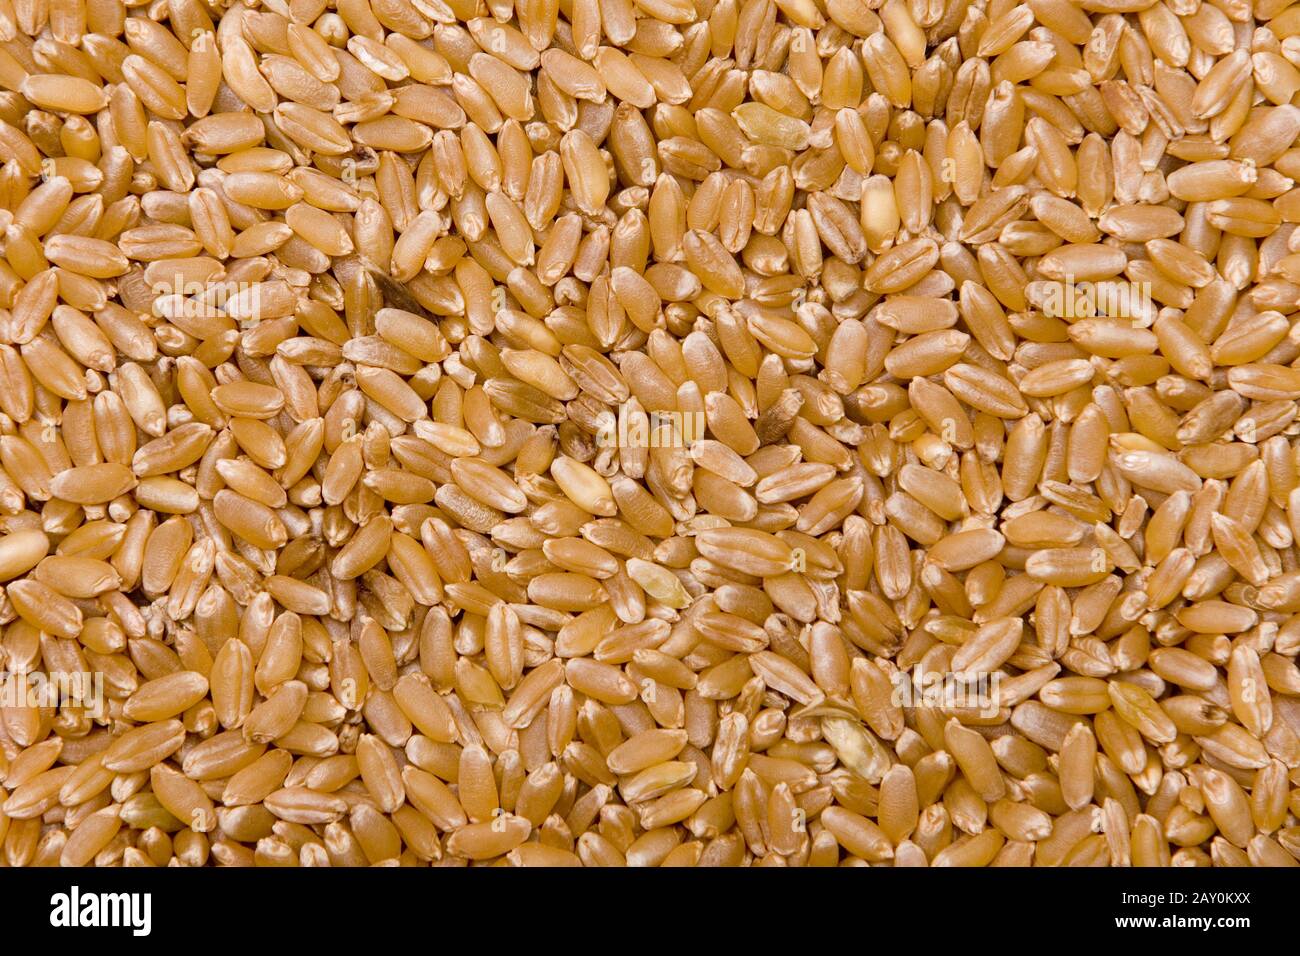 durum wheat (Triticum durum) - durum weat (Triticum durum) Stock Photo